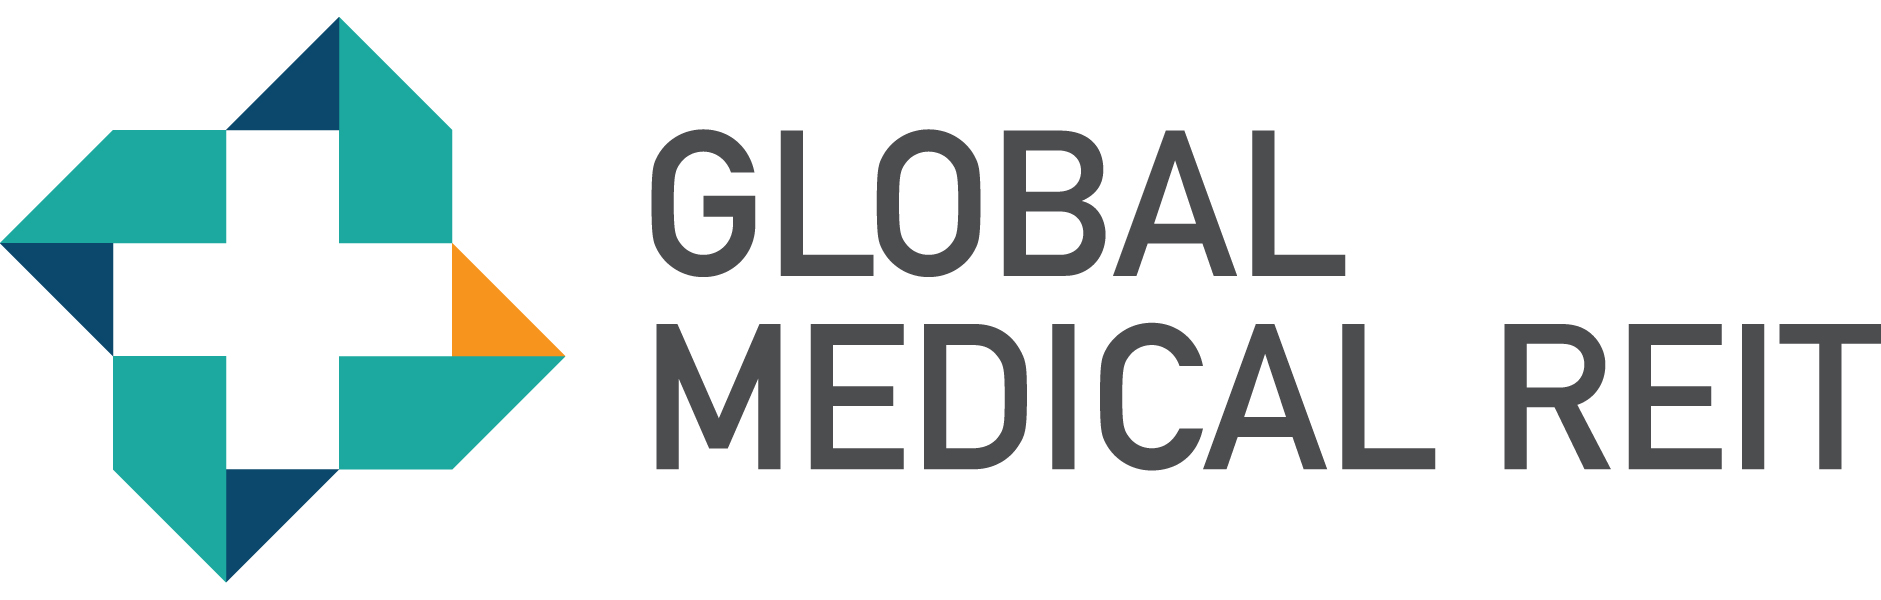 GMR logo